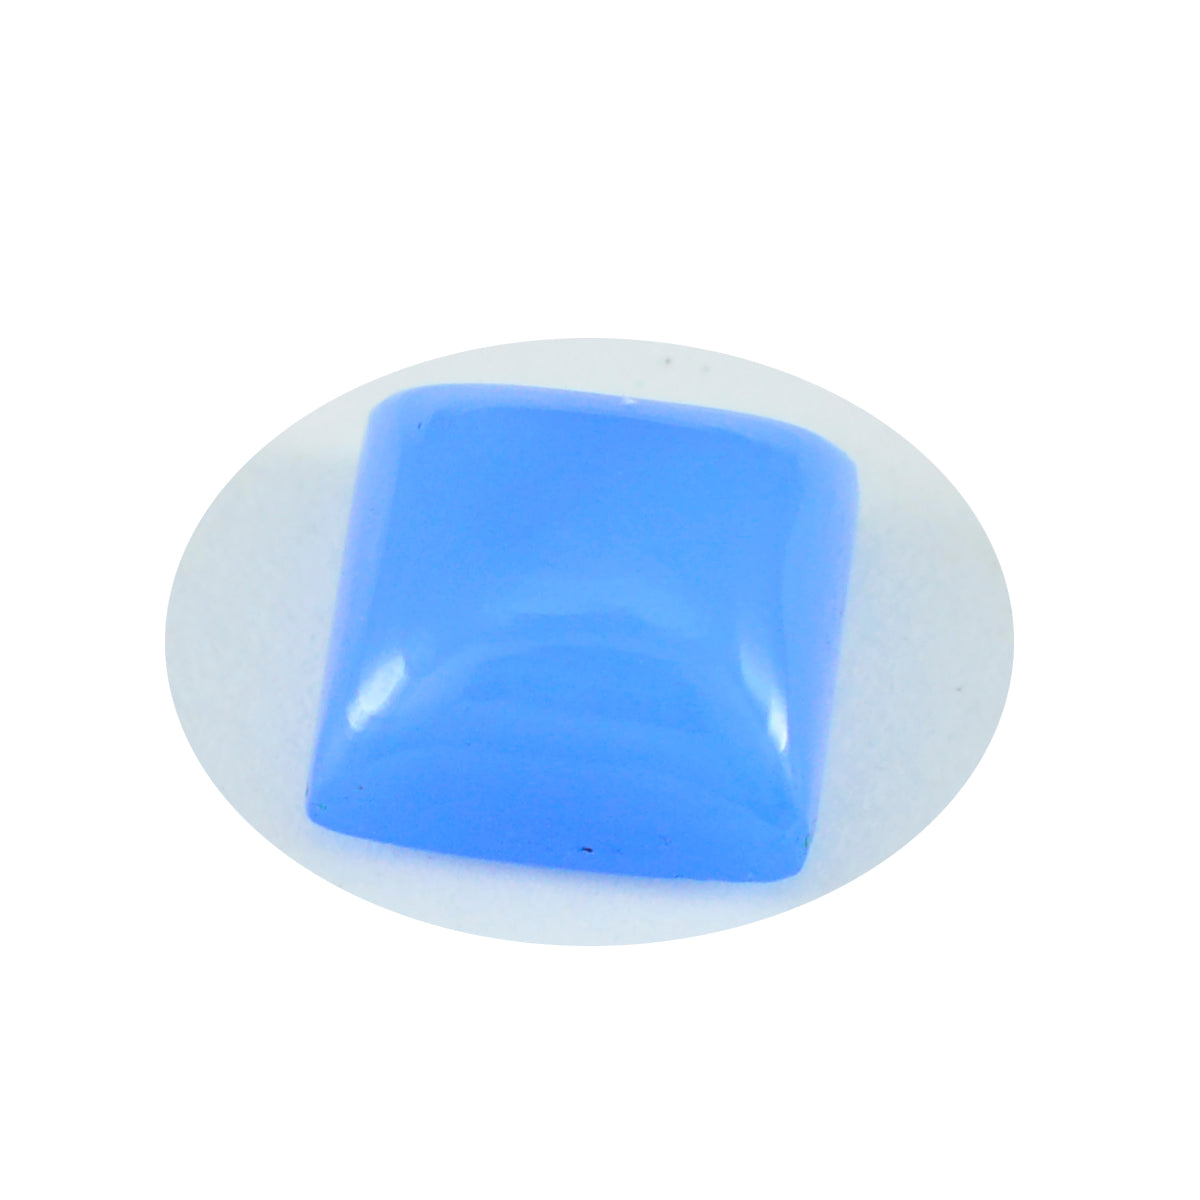 Riyogems 1 pc cabochon de calcédoine bleue 15x15 mm forme carrée pierres précieuses de merveilleuse qualité